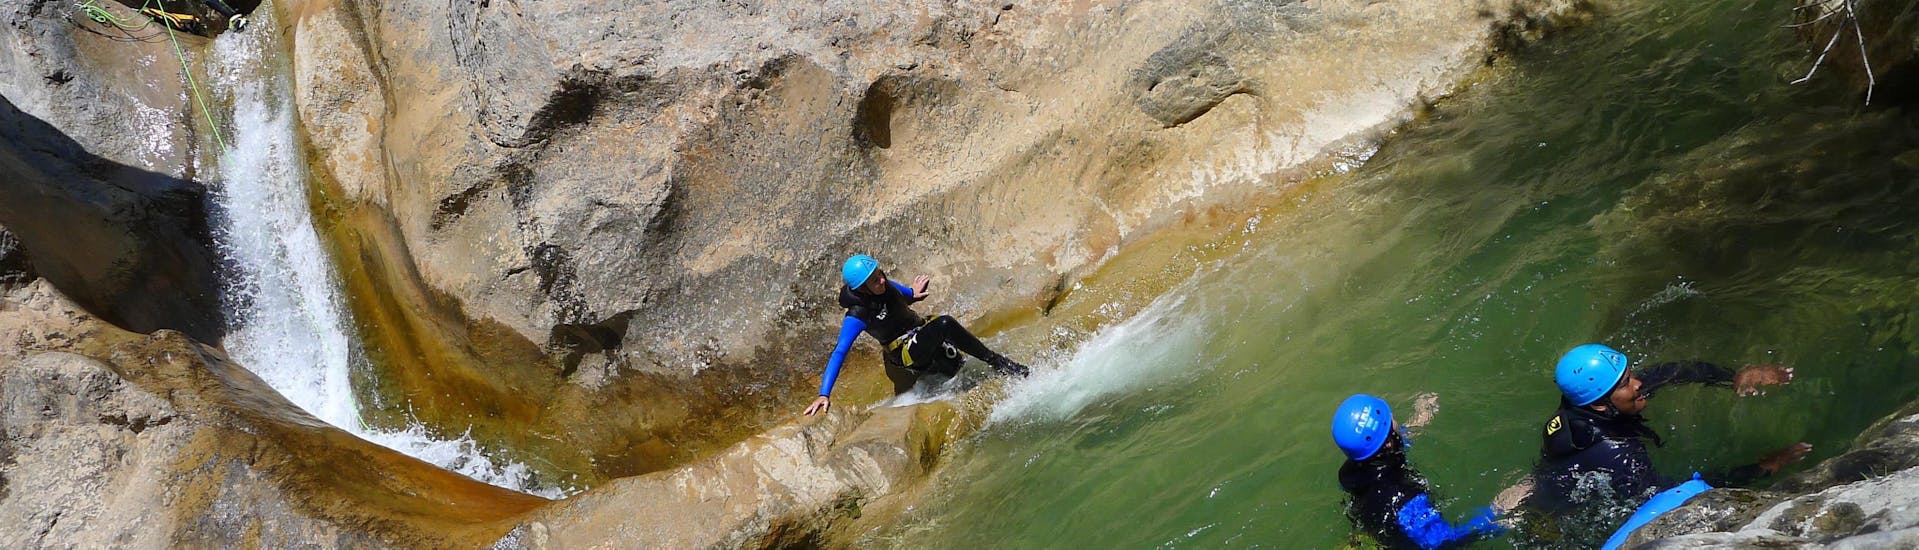 Une fille fait de la descente en rappel dans le Canyon d'Arlos lors de la découverte du Canyoning avec H2O vives.